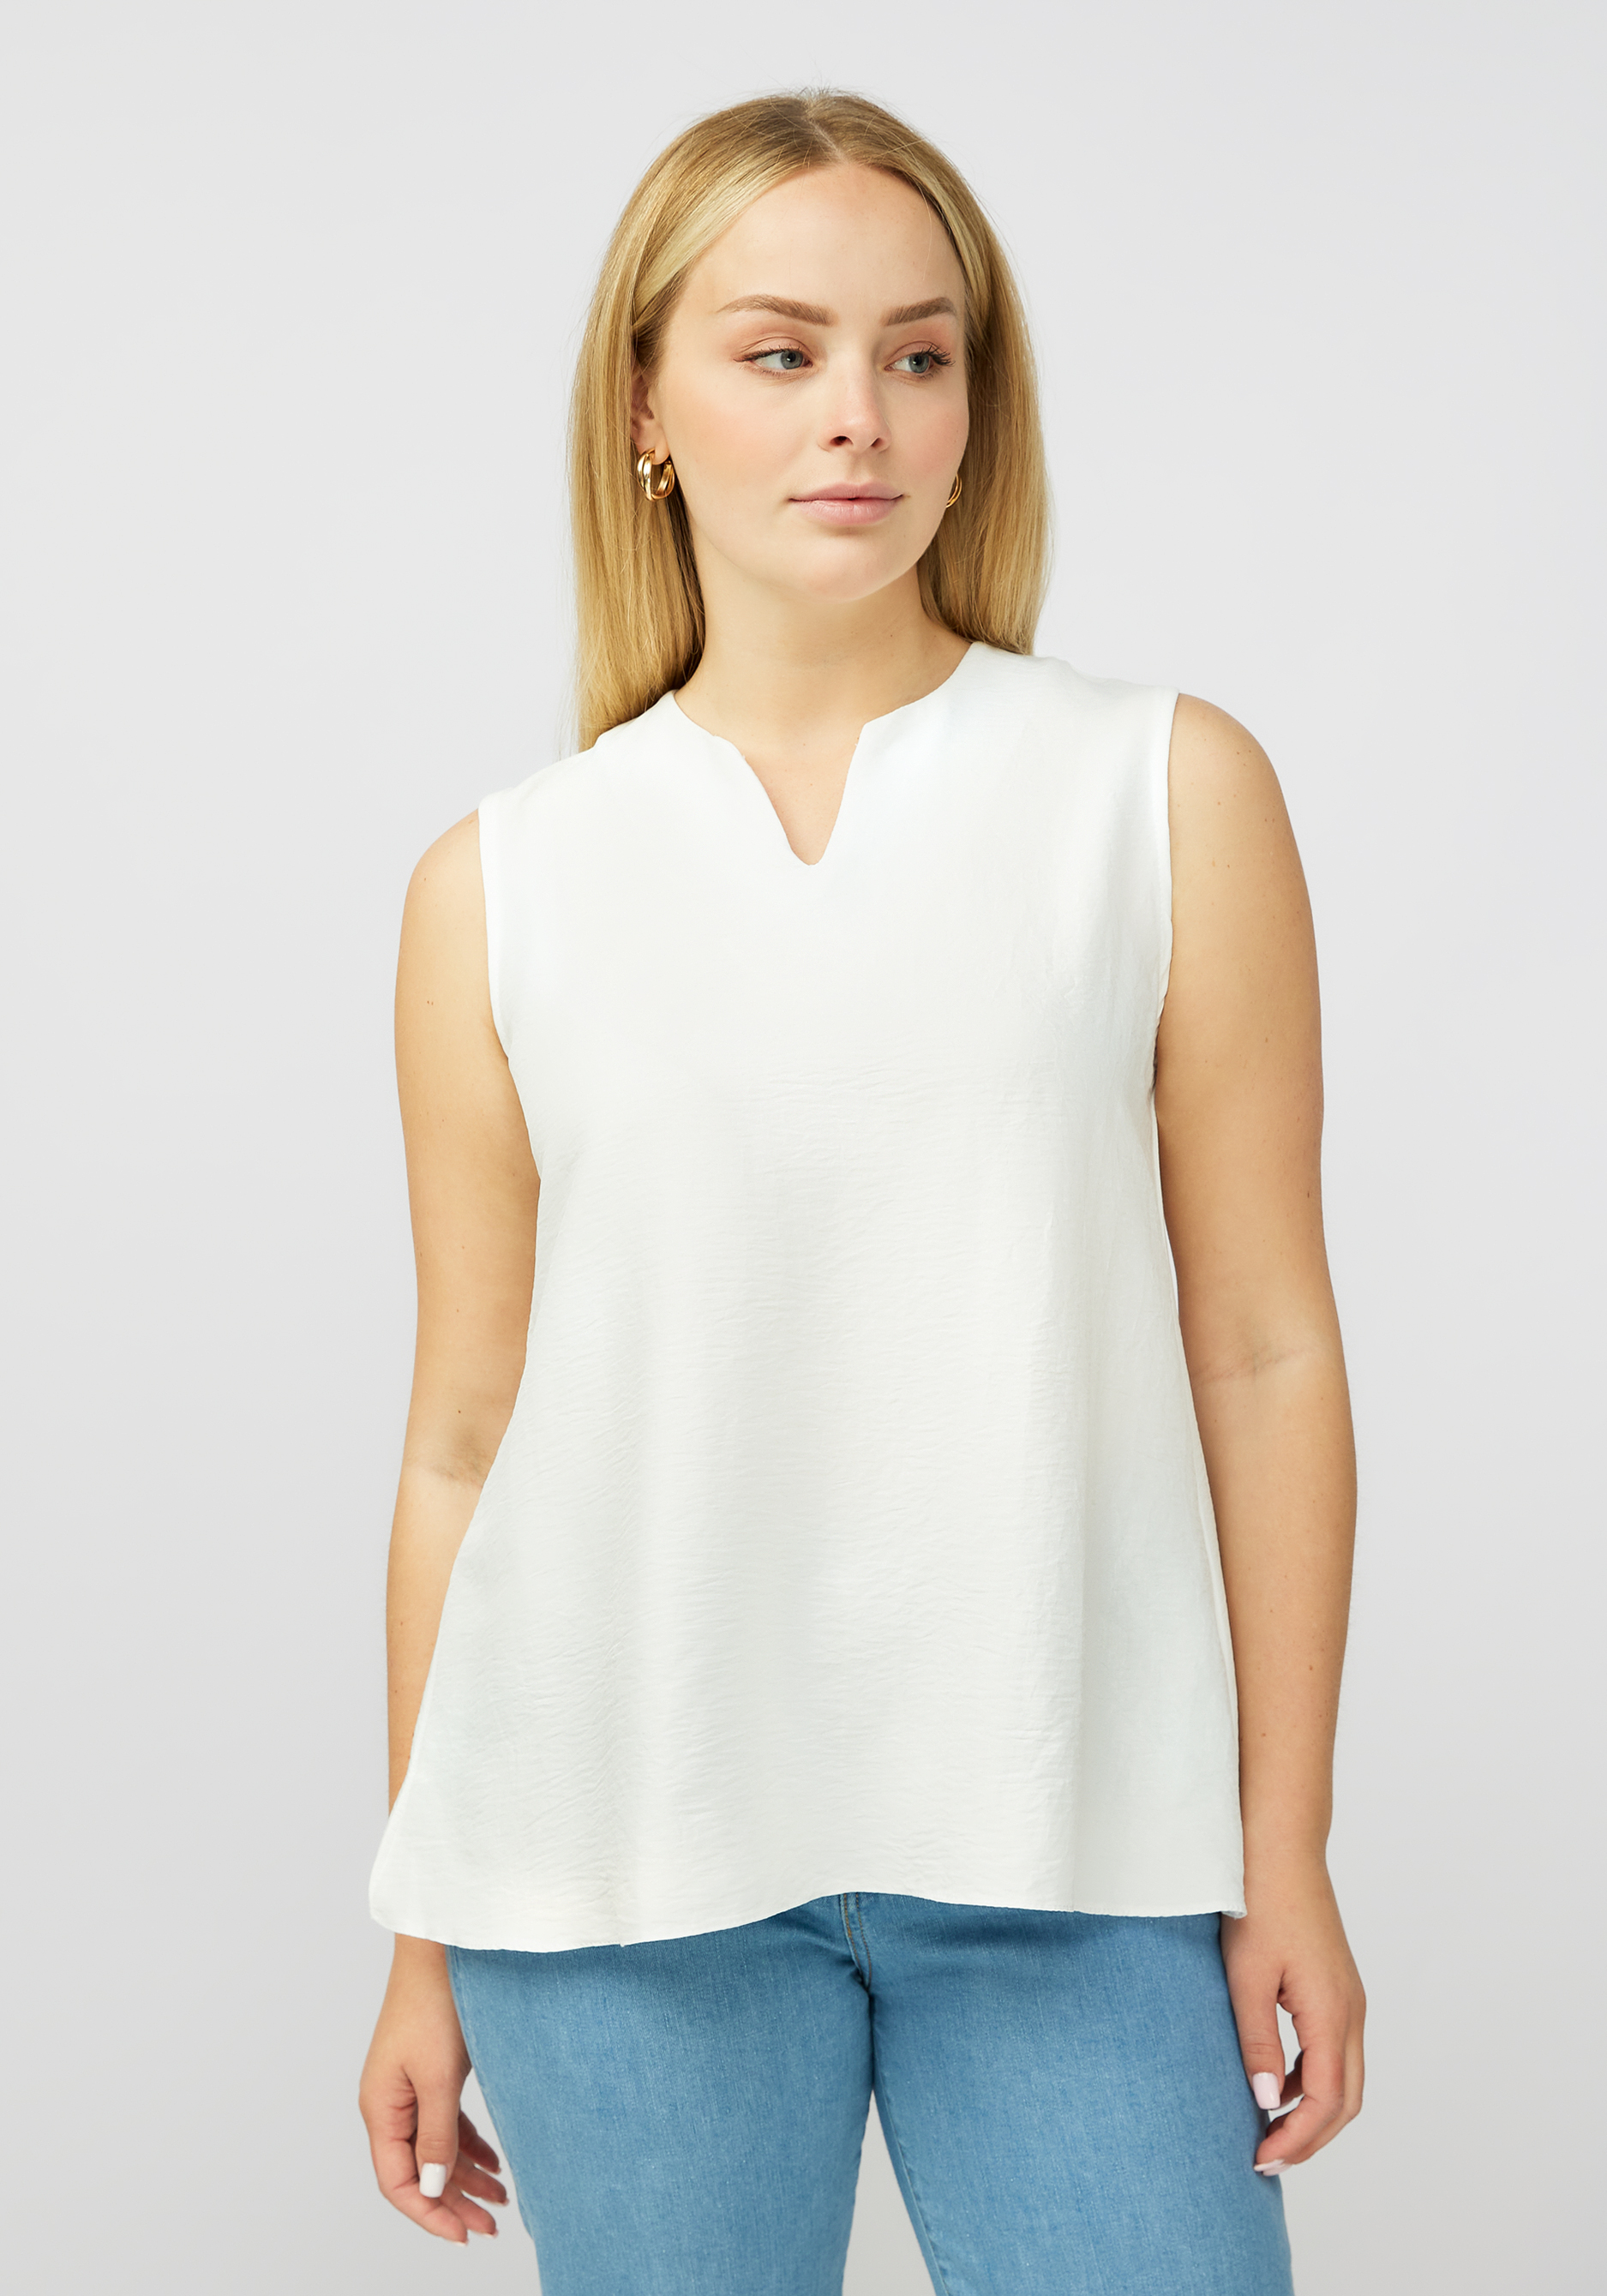 Блуза без рукавов с V образным вырезом VeraVo, размер 52, цвет белый - фото 2